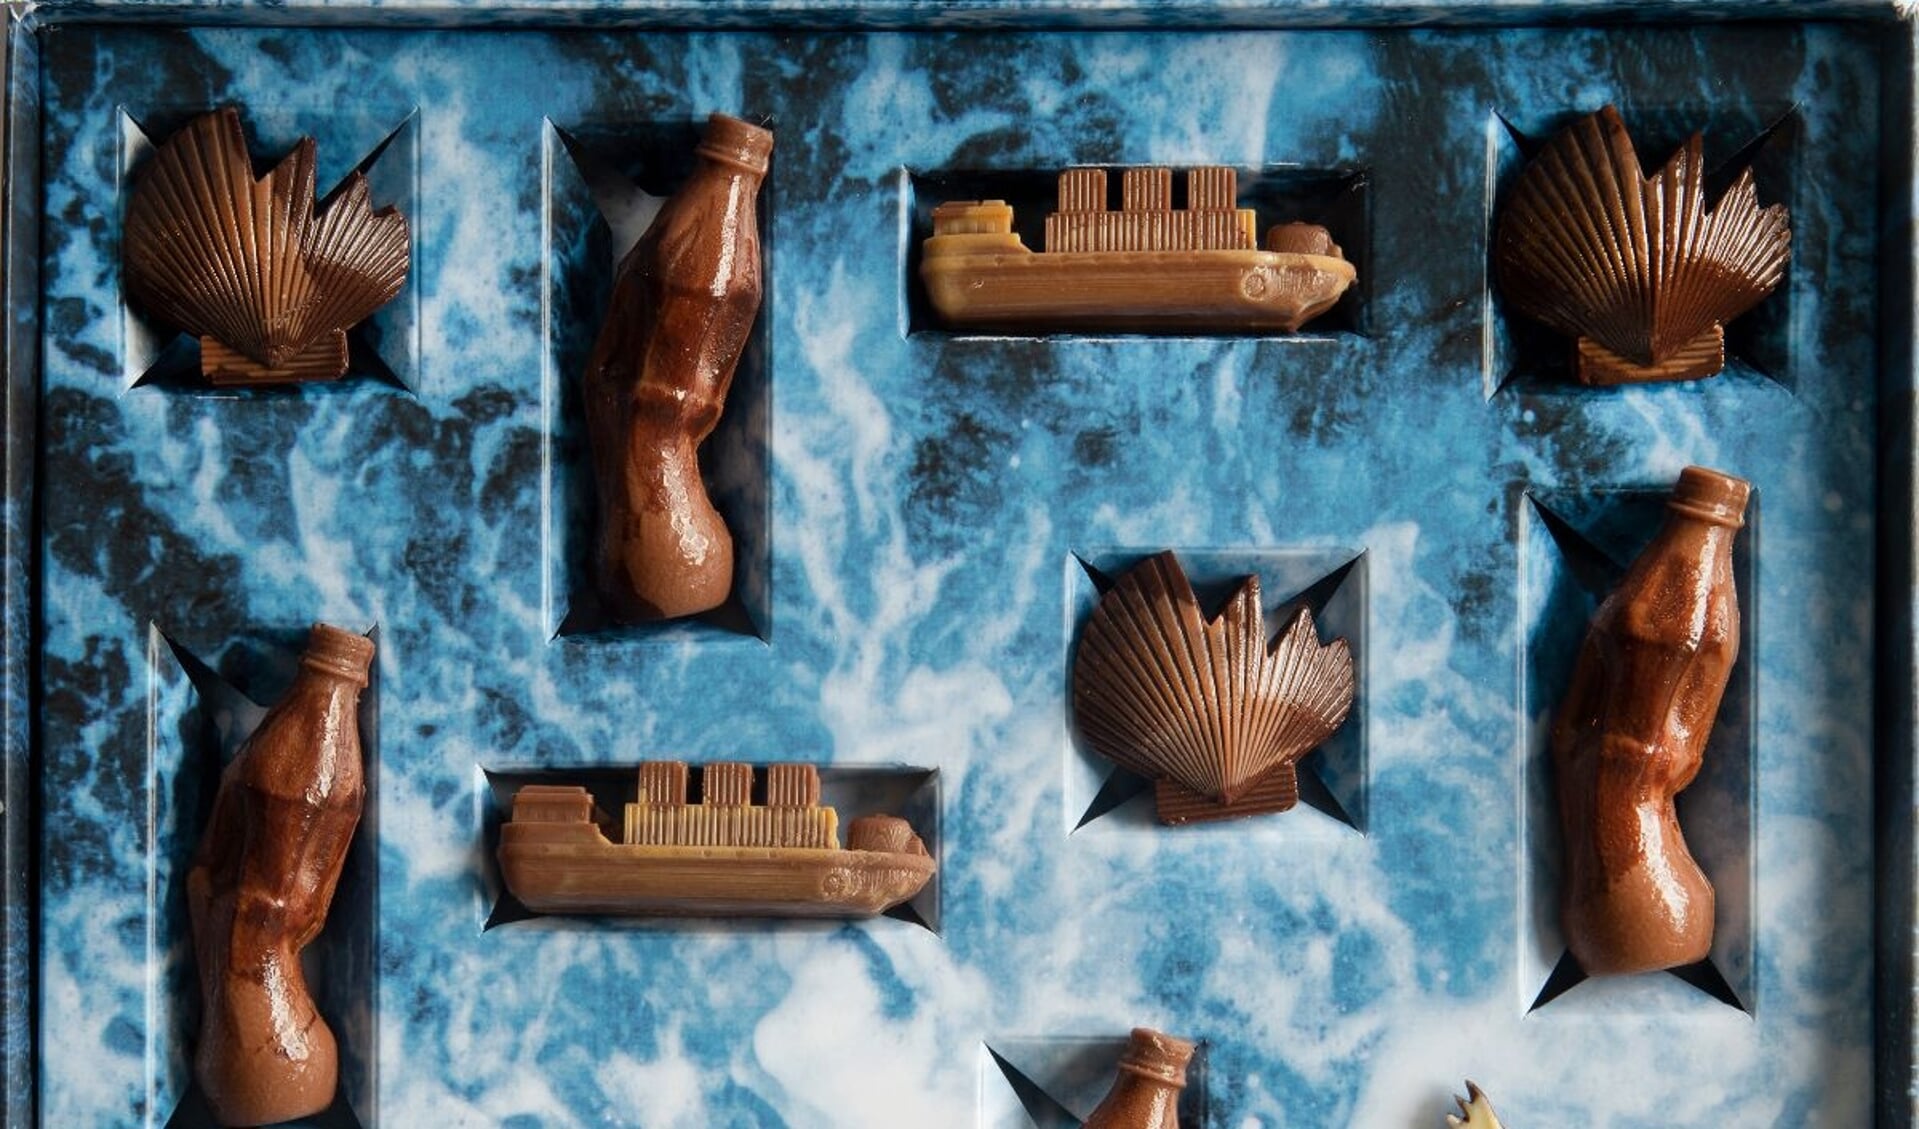 Het Noordzeebanket, een variant op het alom bekende chocolade zeebanket, is een wake-up call die een minder smakelijke kant van de Noordzee toont. 